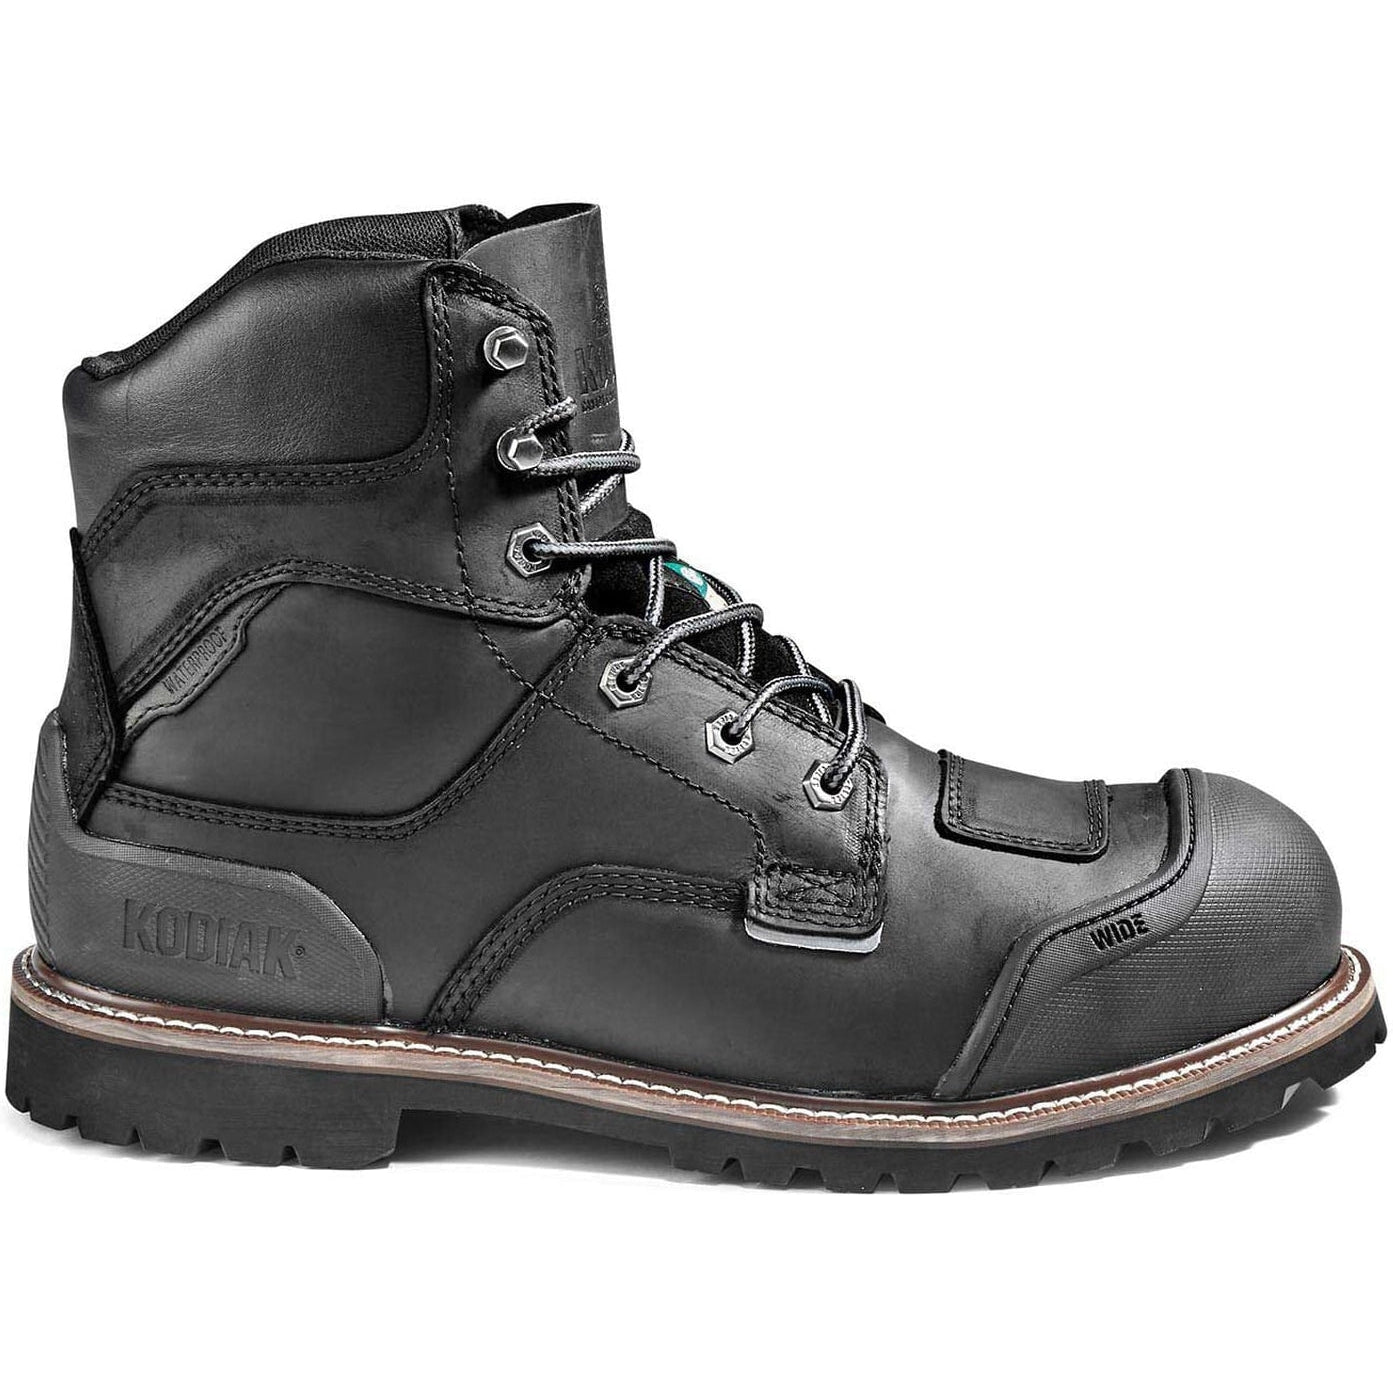 Kodiak Men's Generations Widebody 6" Comp Toe WP Work Boot -Black- 4TGBBK  - Overlook Boots